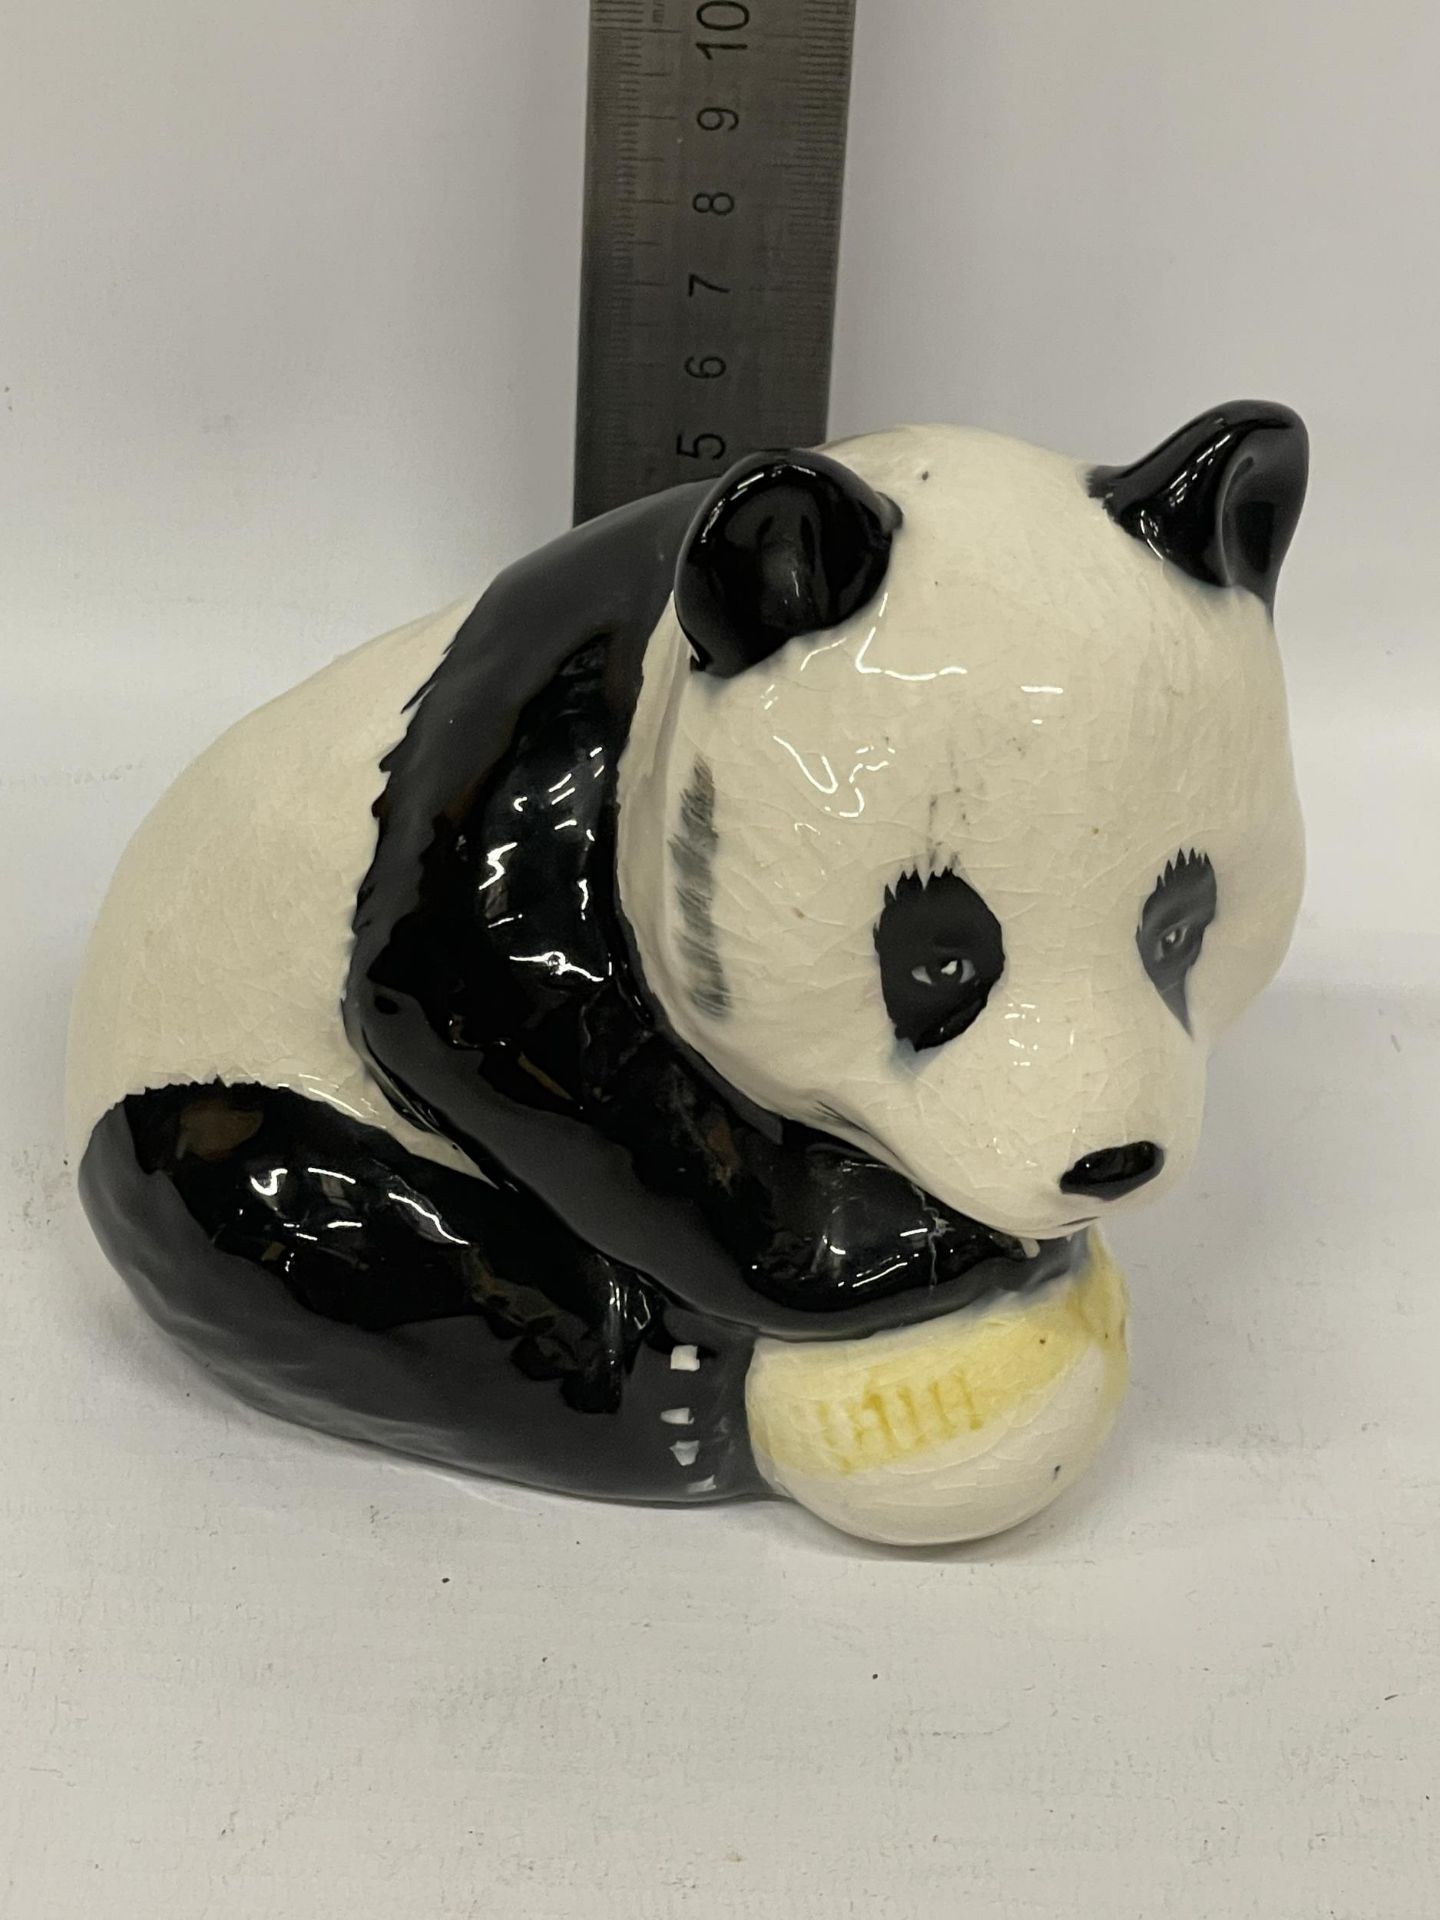 A BESWICK PANDA WITH A BALL